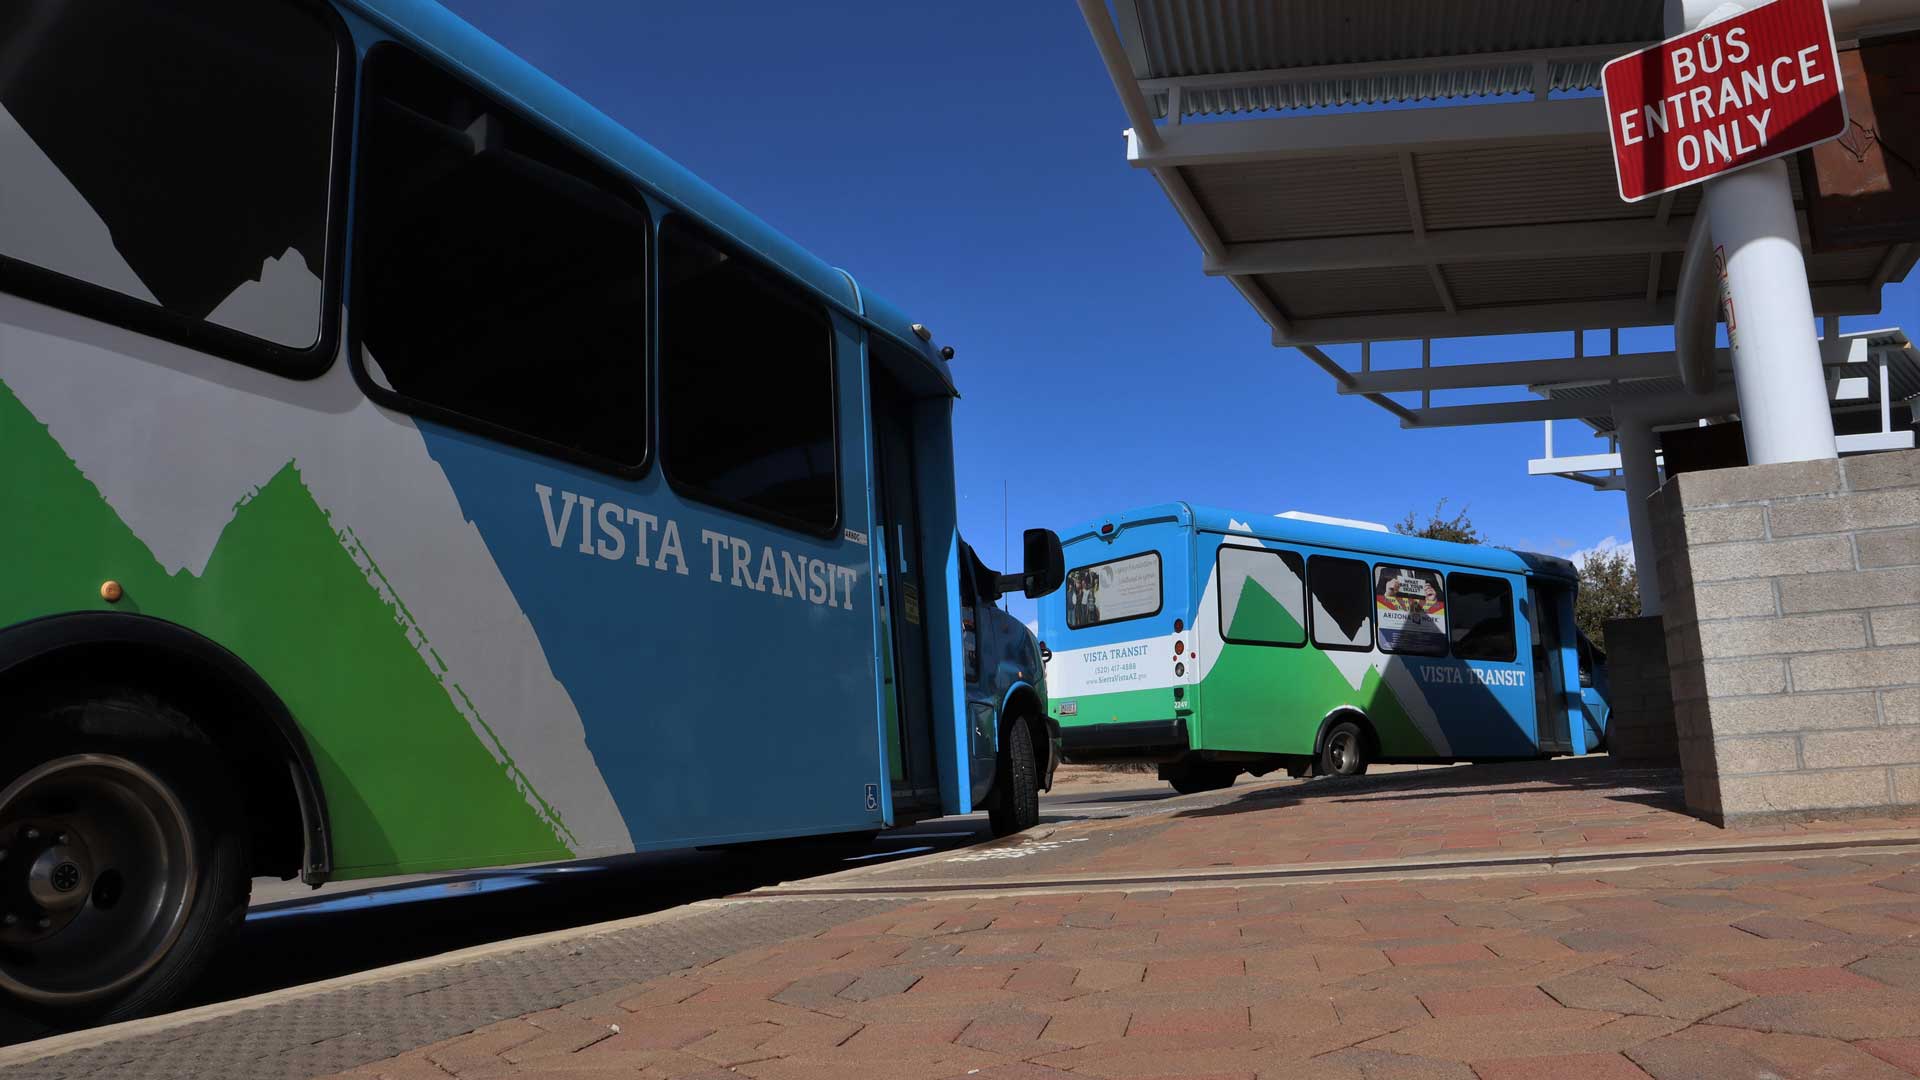 Sierra Vista buses